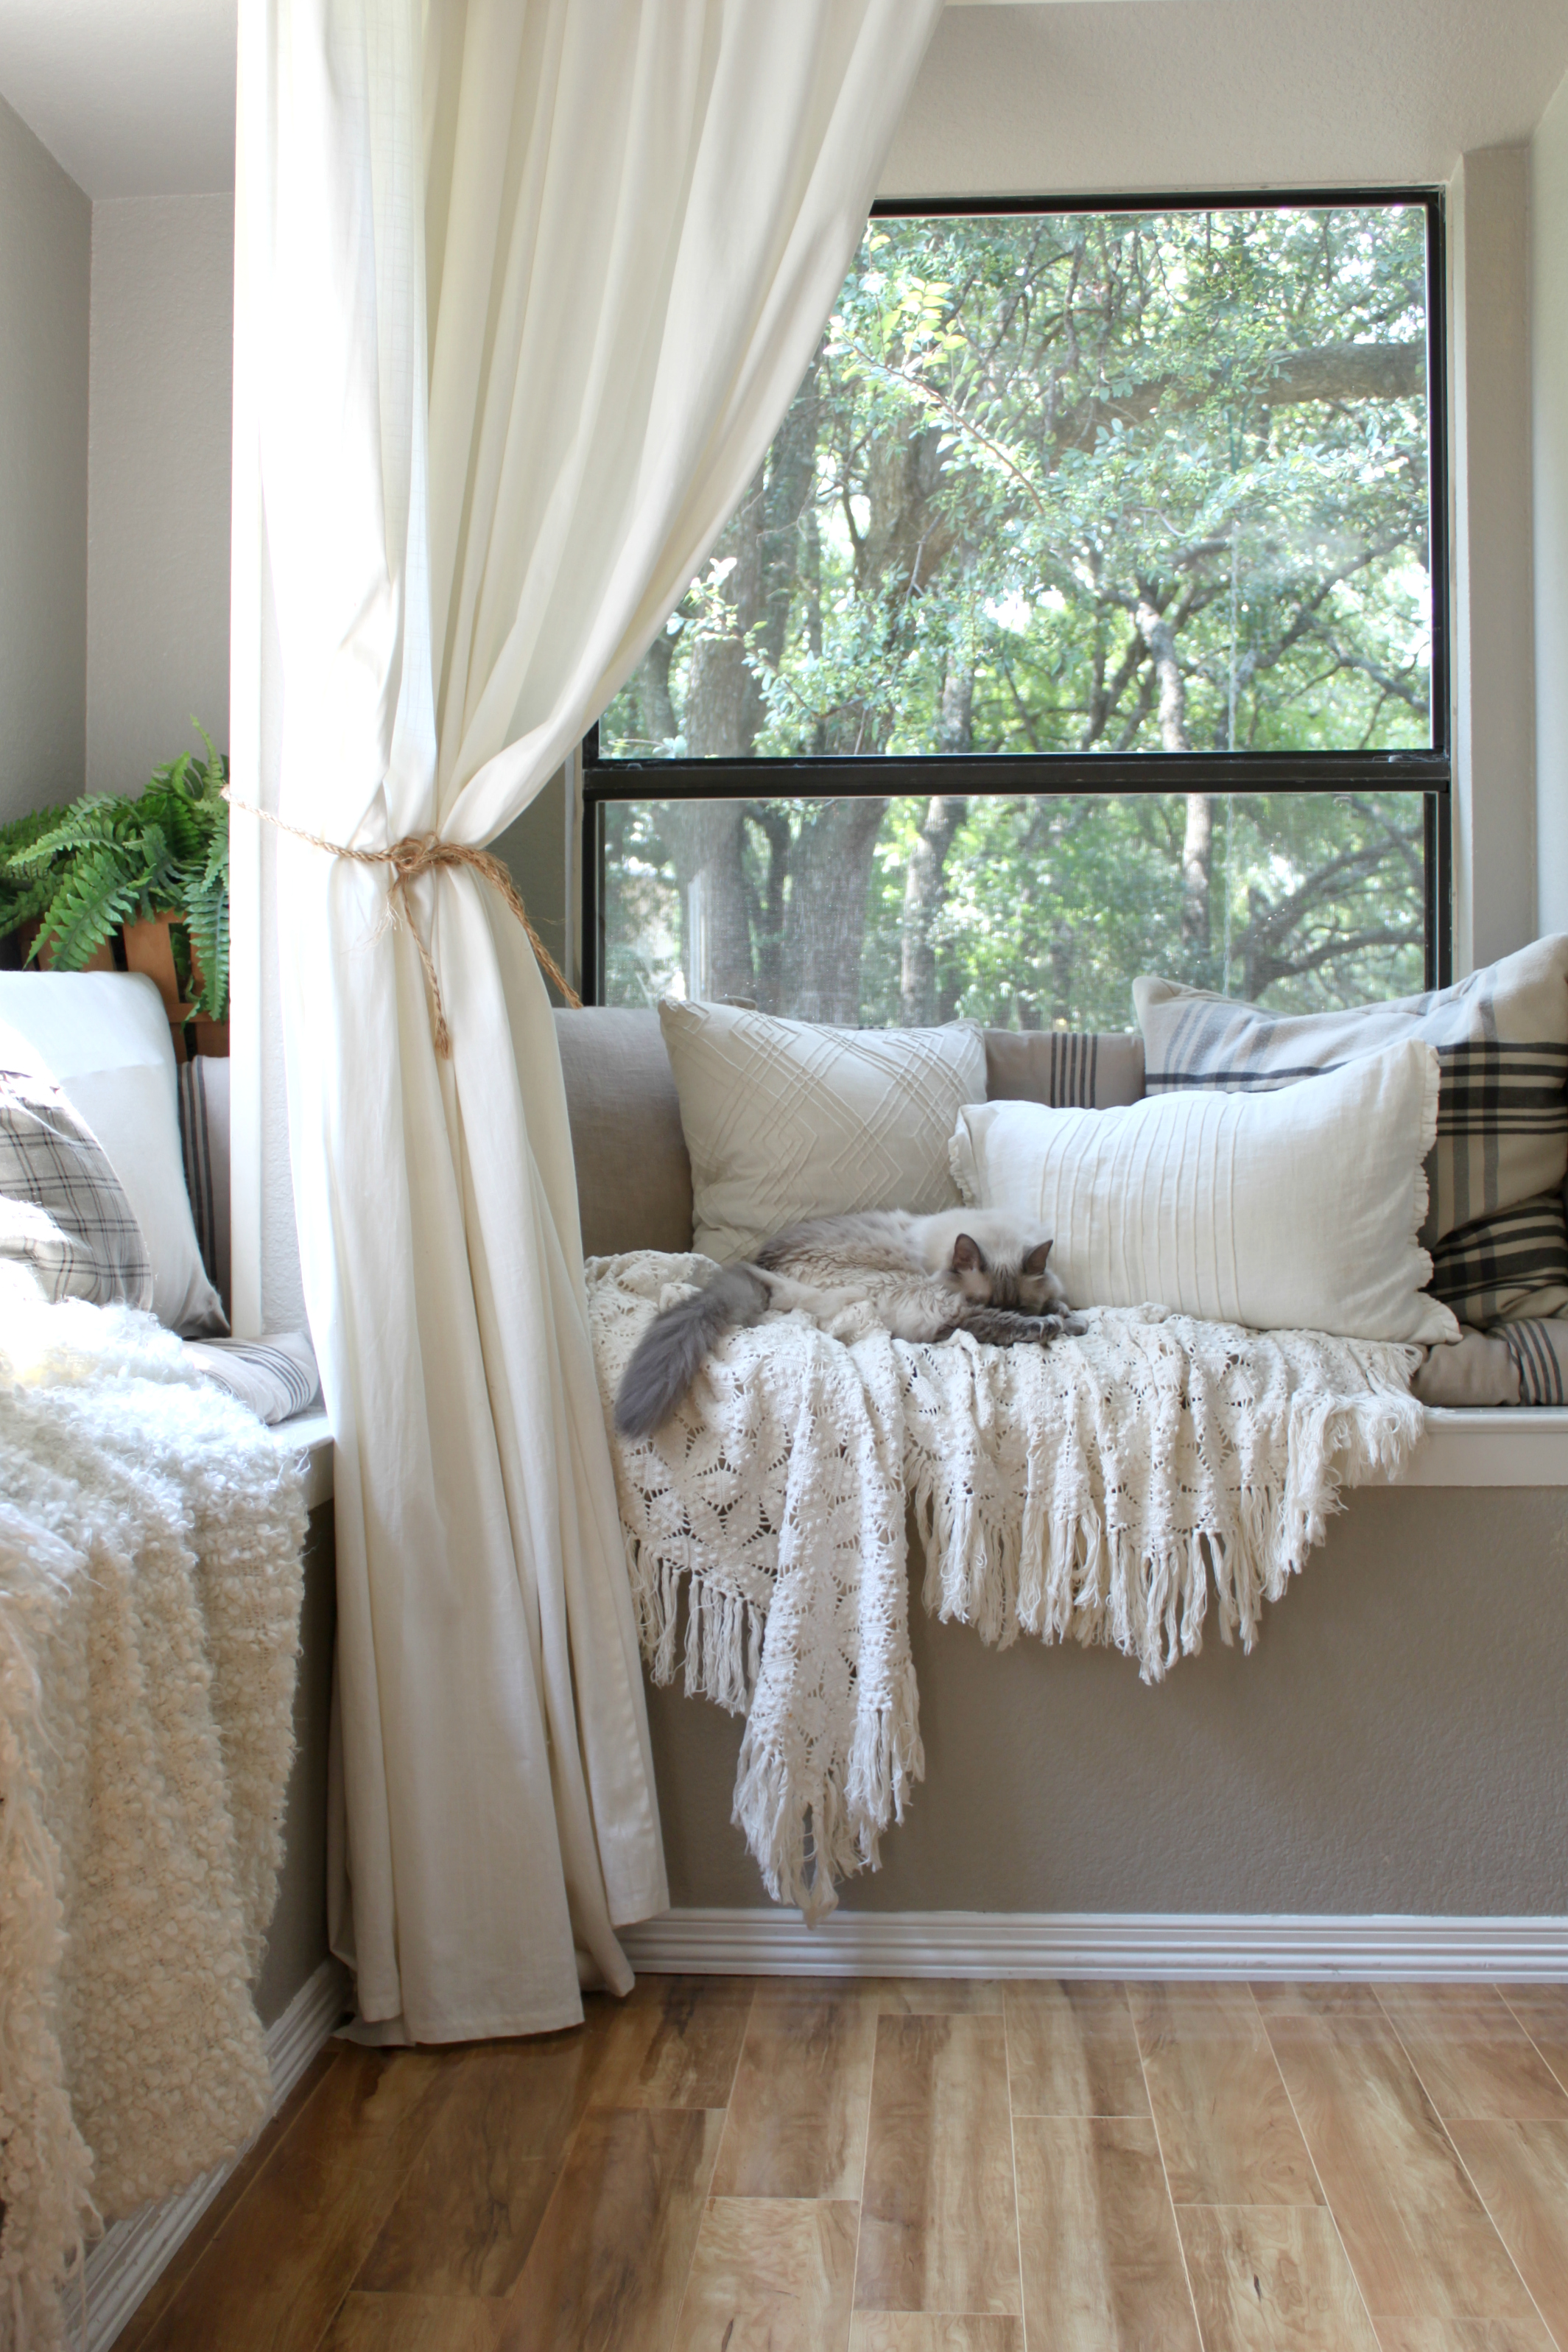 kitchen-nook-pillows-curtains-ikea